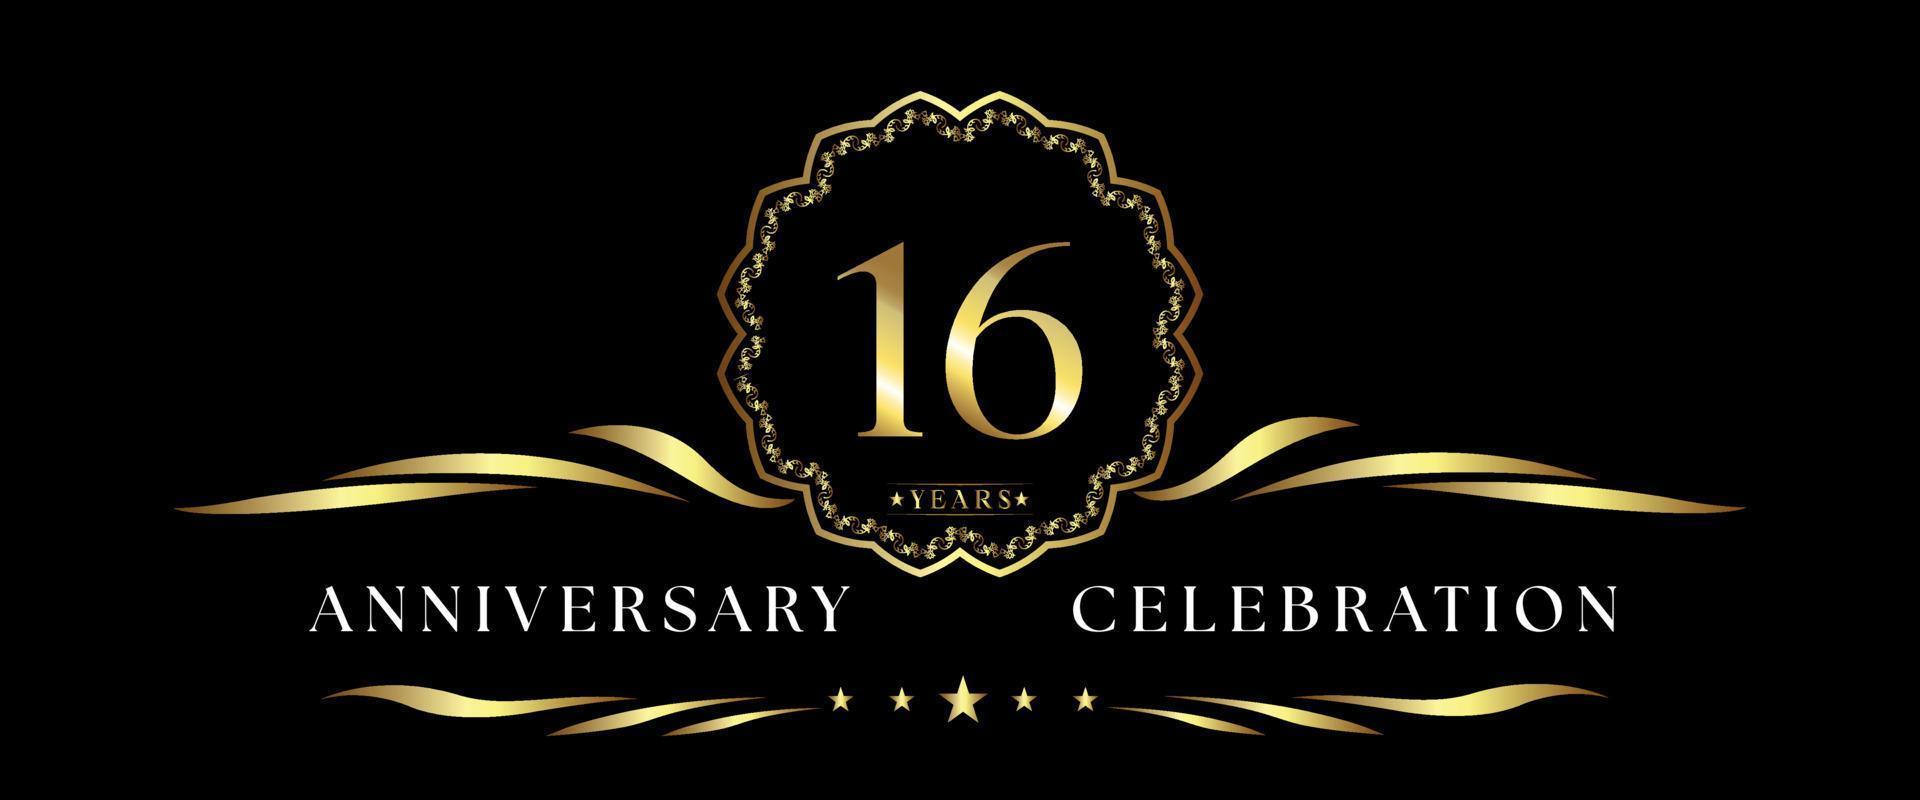 Celebración del aniversario de 16 años con marco decorativo dorado aislado en fondo negro. diseño vectorial para tarjetas de felicitación, fiesta de cumpleaños, boda, fiesta de eventos, ceremonia. Logotipo de aniversario de 16 años. vector